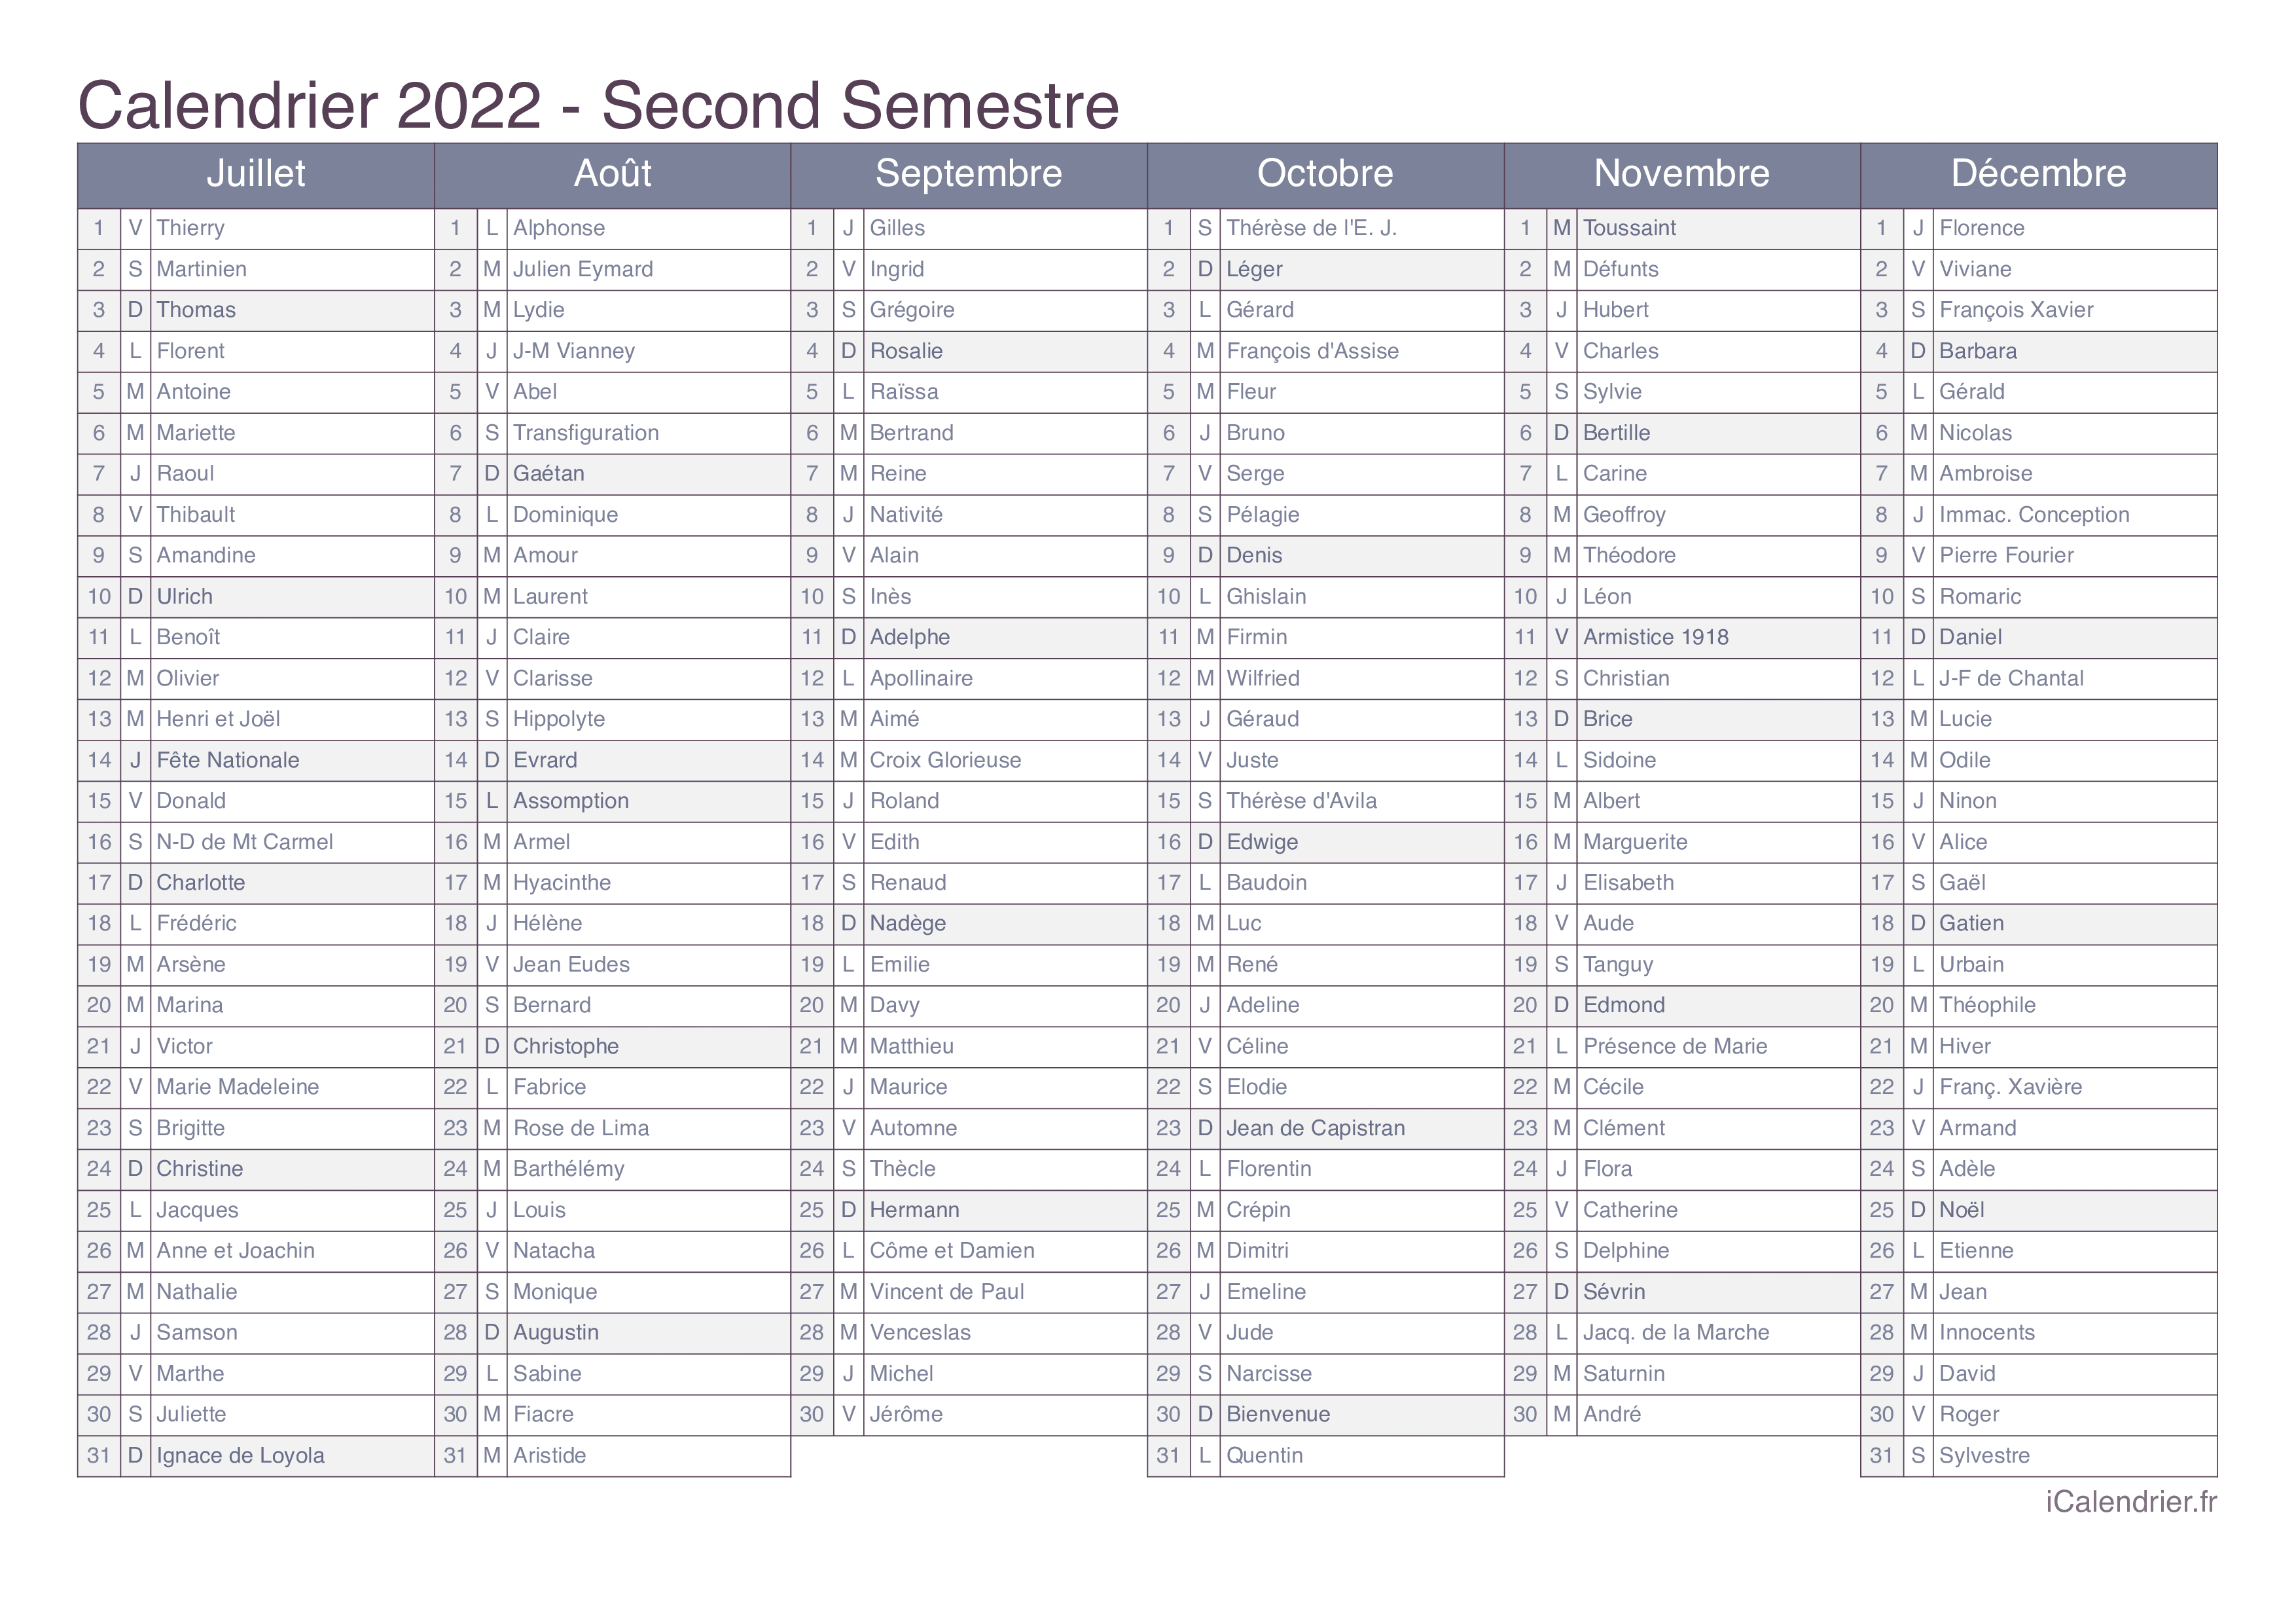 Calendrier 2022 Avec Fêtes Calendrier 2022 à imprimer PDF et Excel   iCalendrier